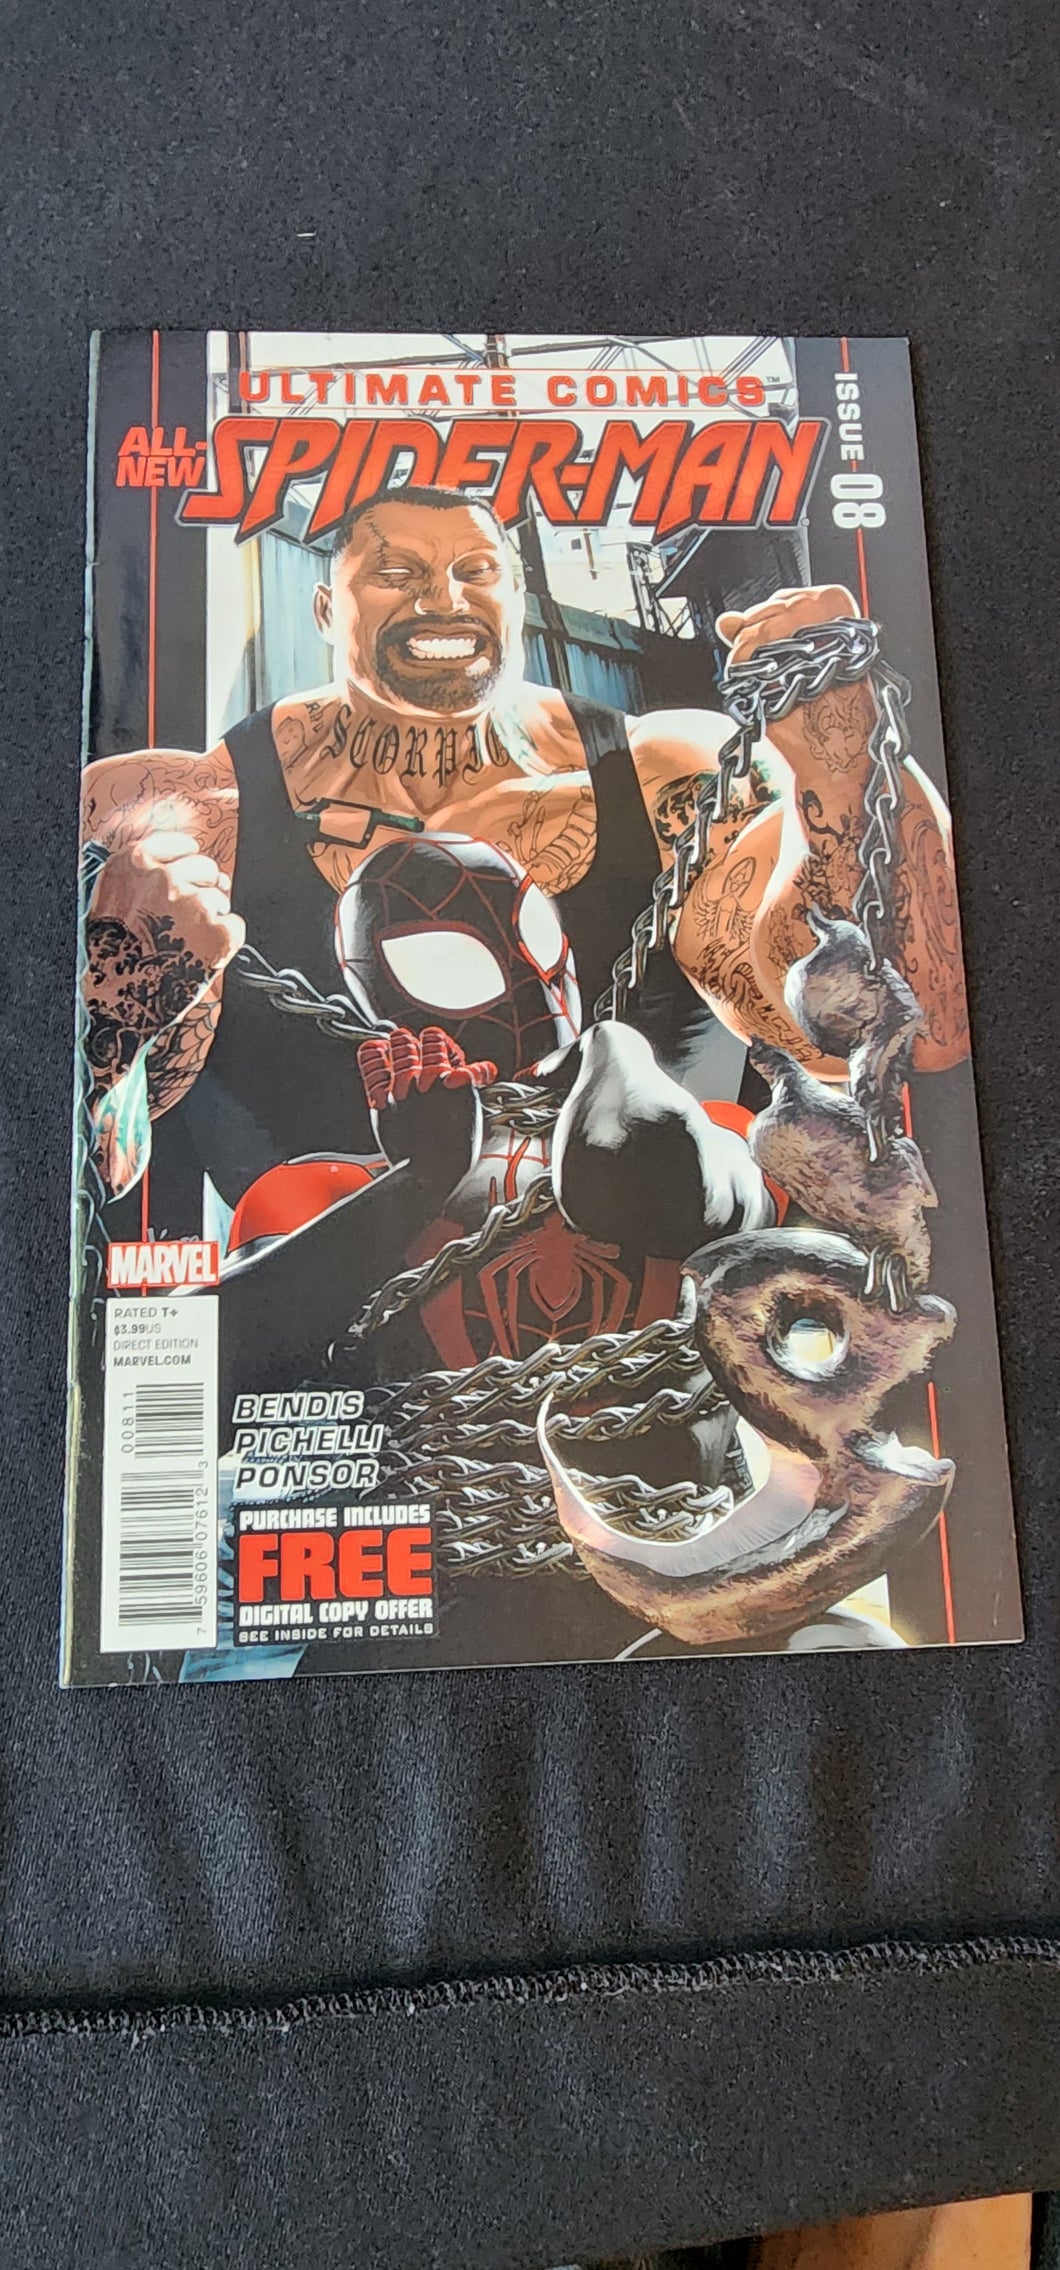 Ultimate Comics all new Spider-Man #8 (Marvel ) Miles Morales COMICS